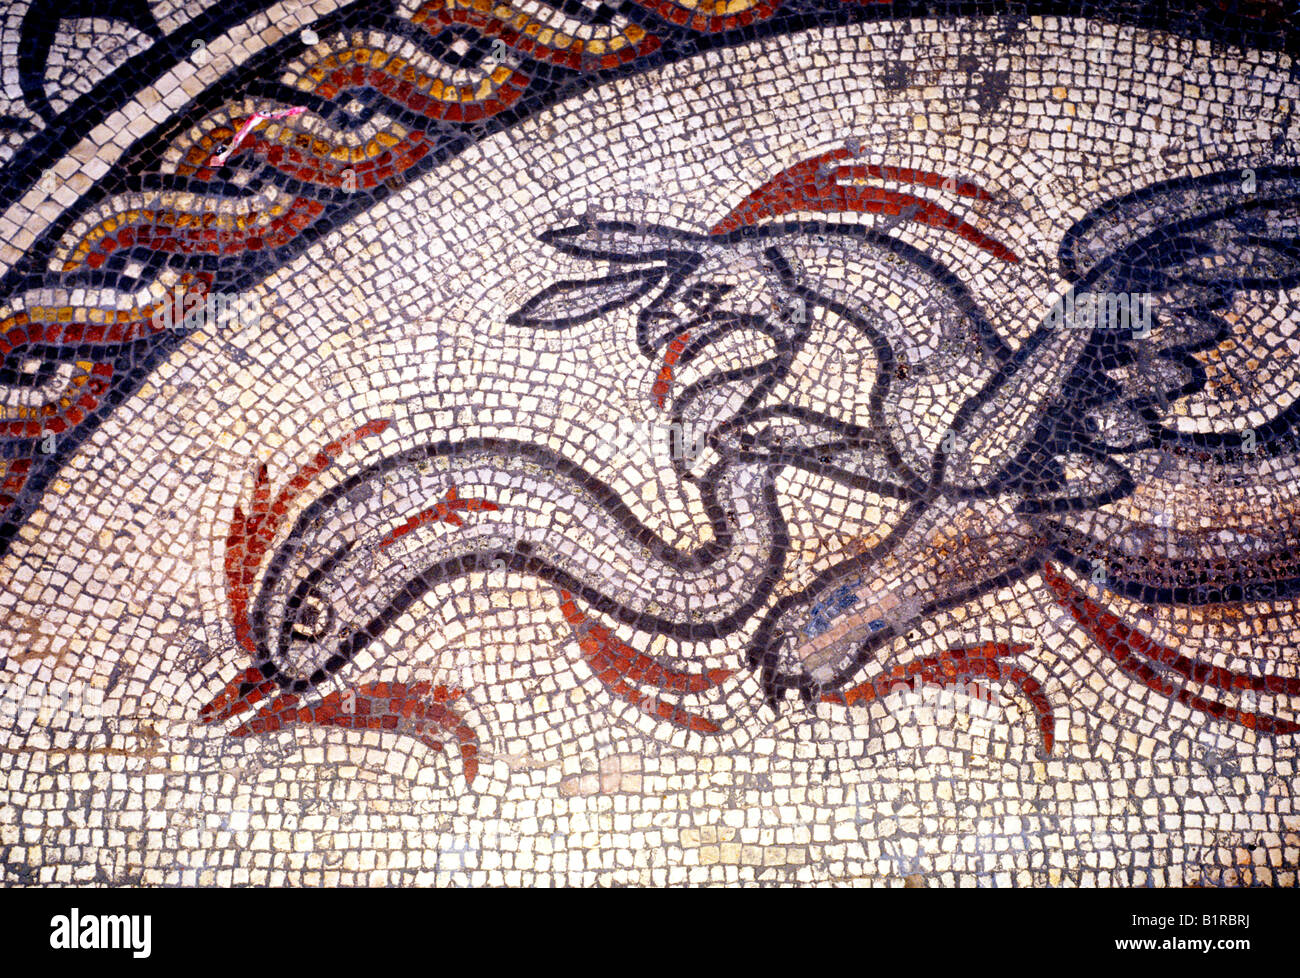 Römisches Mosaik Boden Britanniens Museum Cirencester Mosaiksteine detail England Gloucestershire UK Pflaster Großbritannien Stockfoto